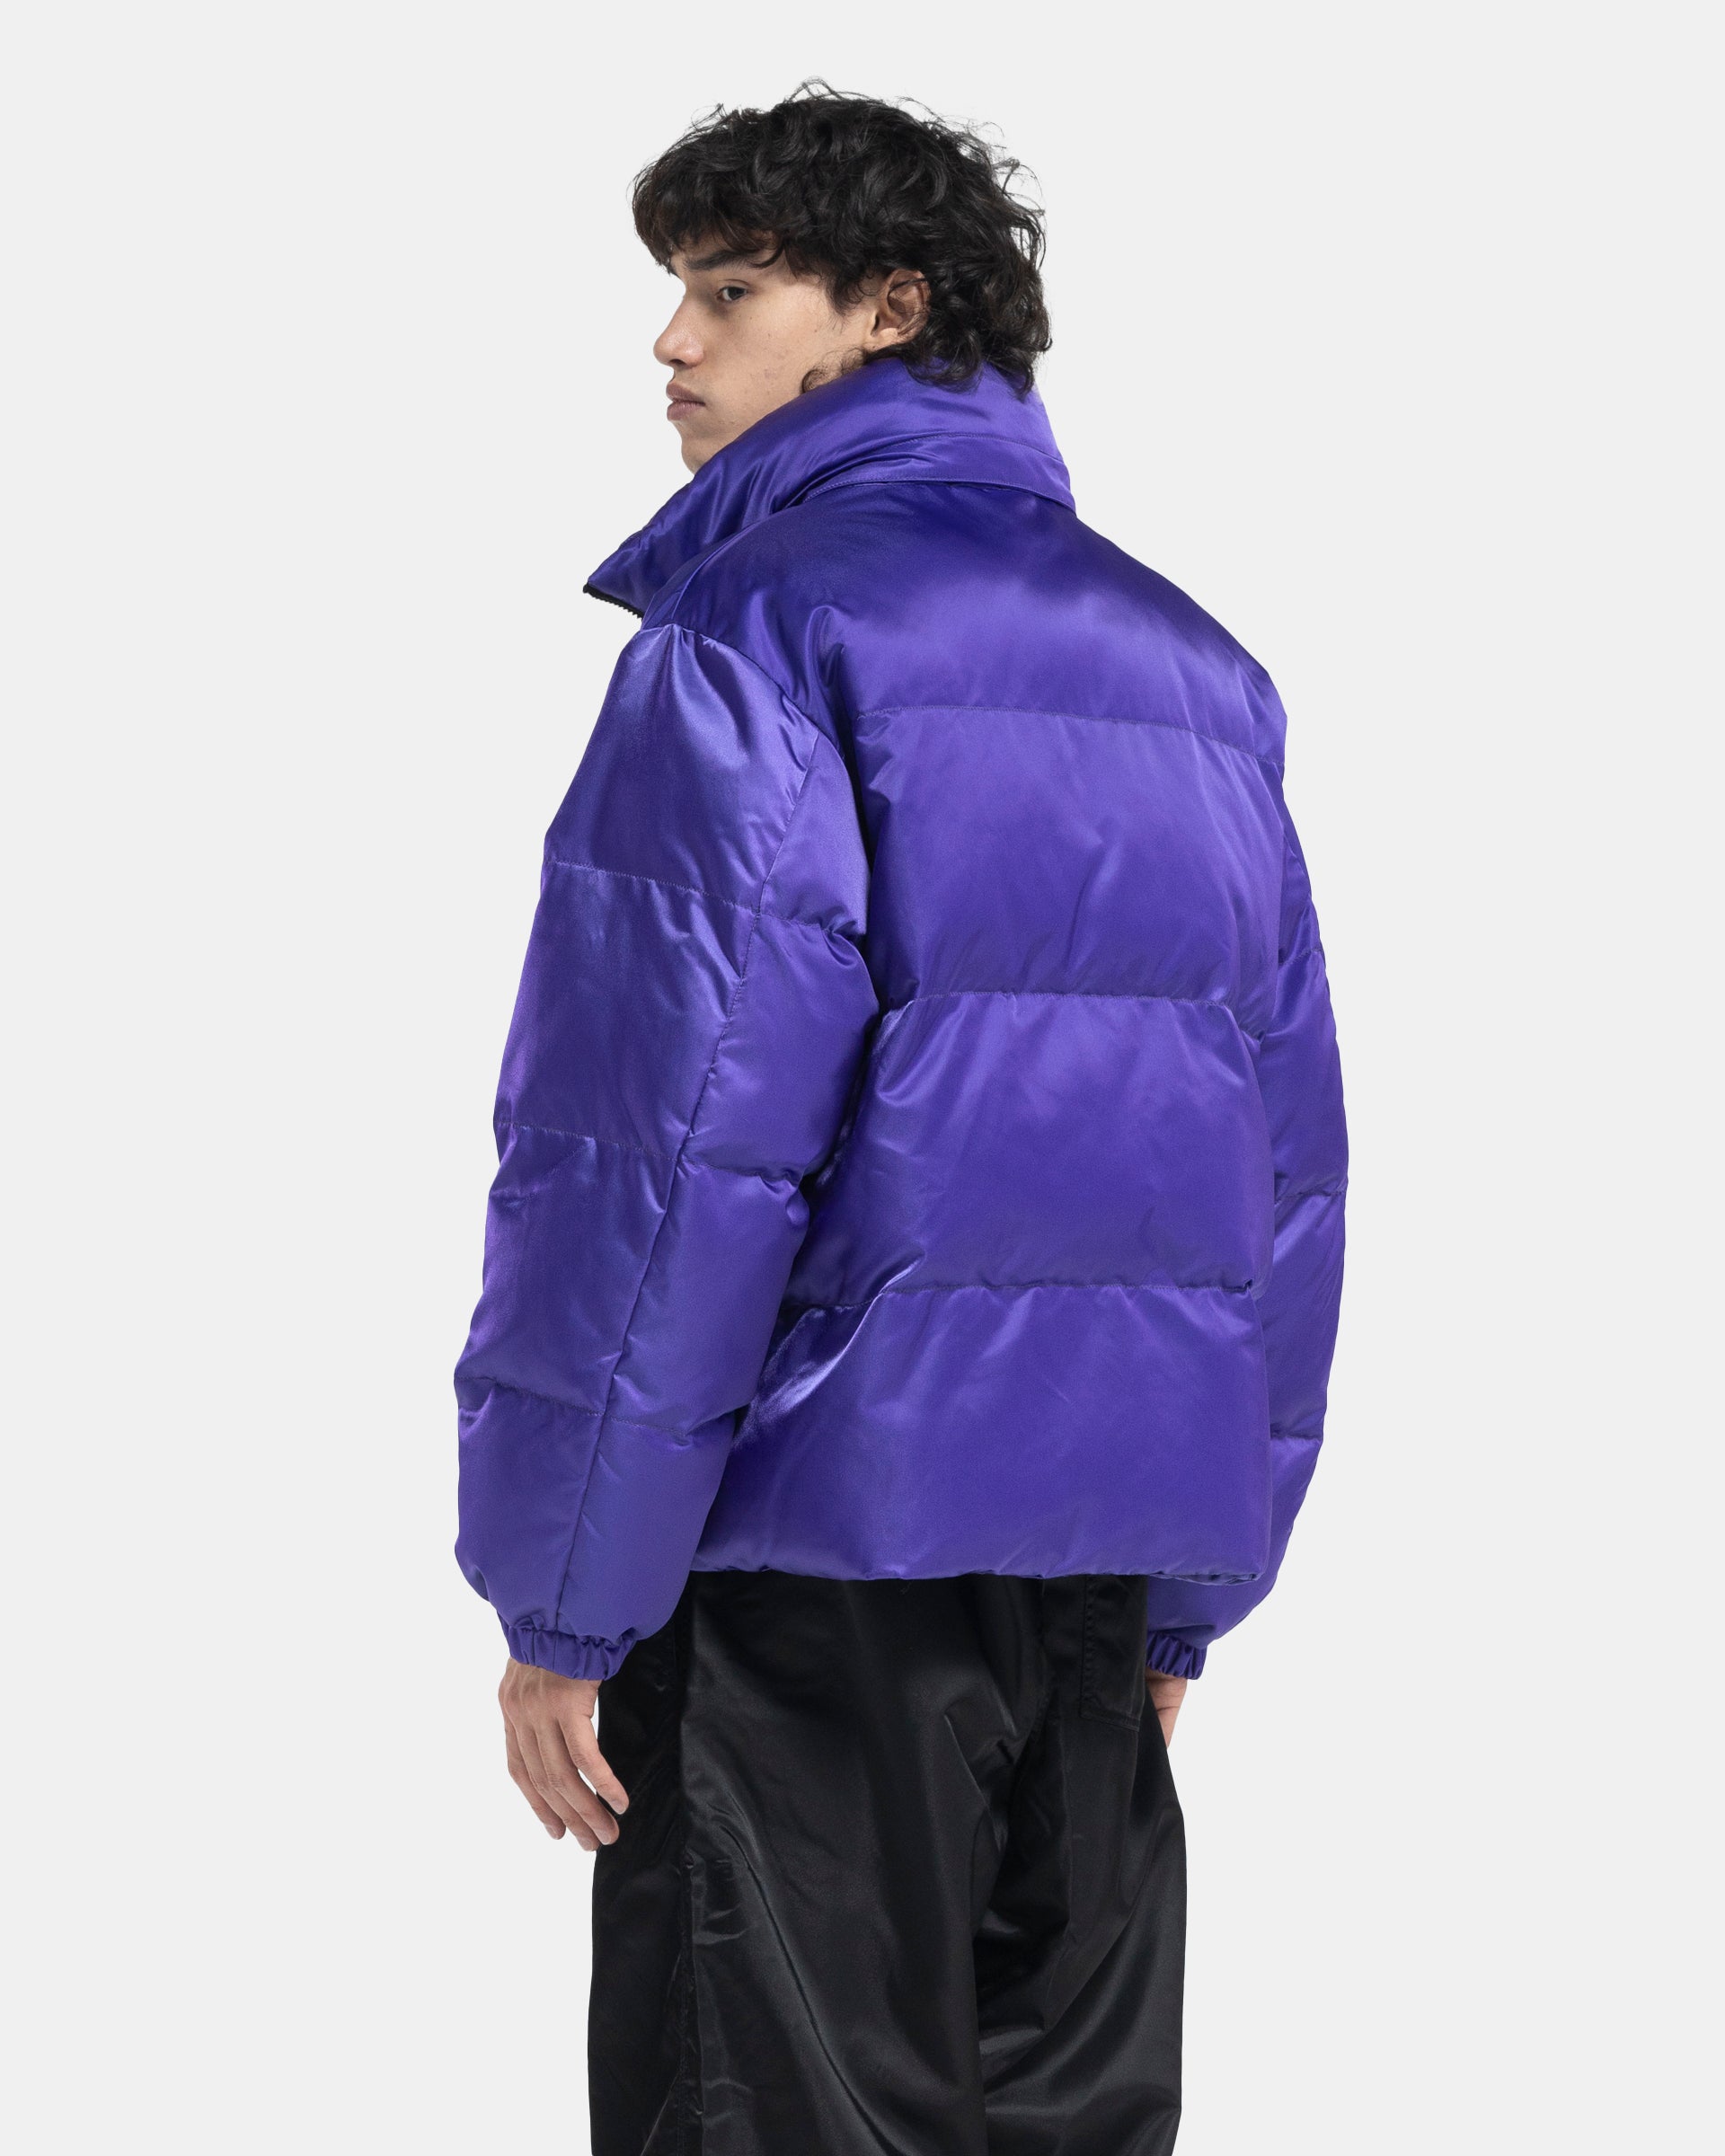 Trace Jacket in Purple